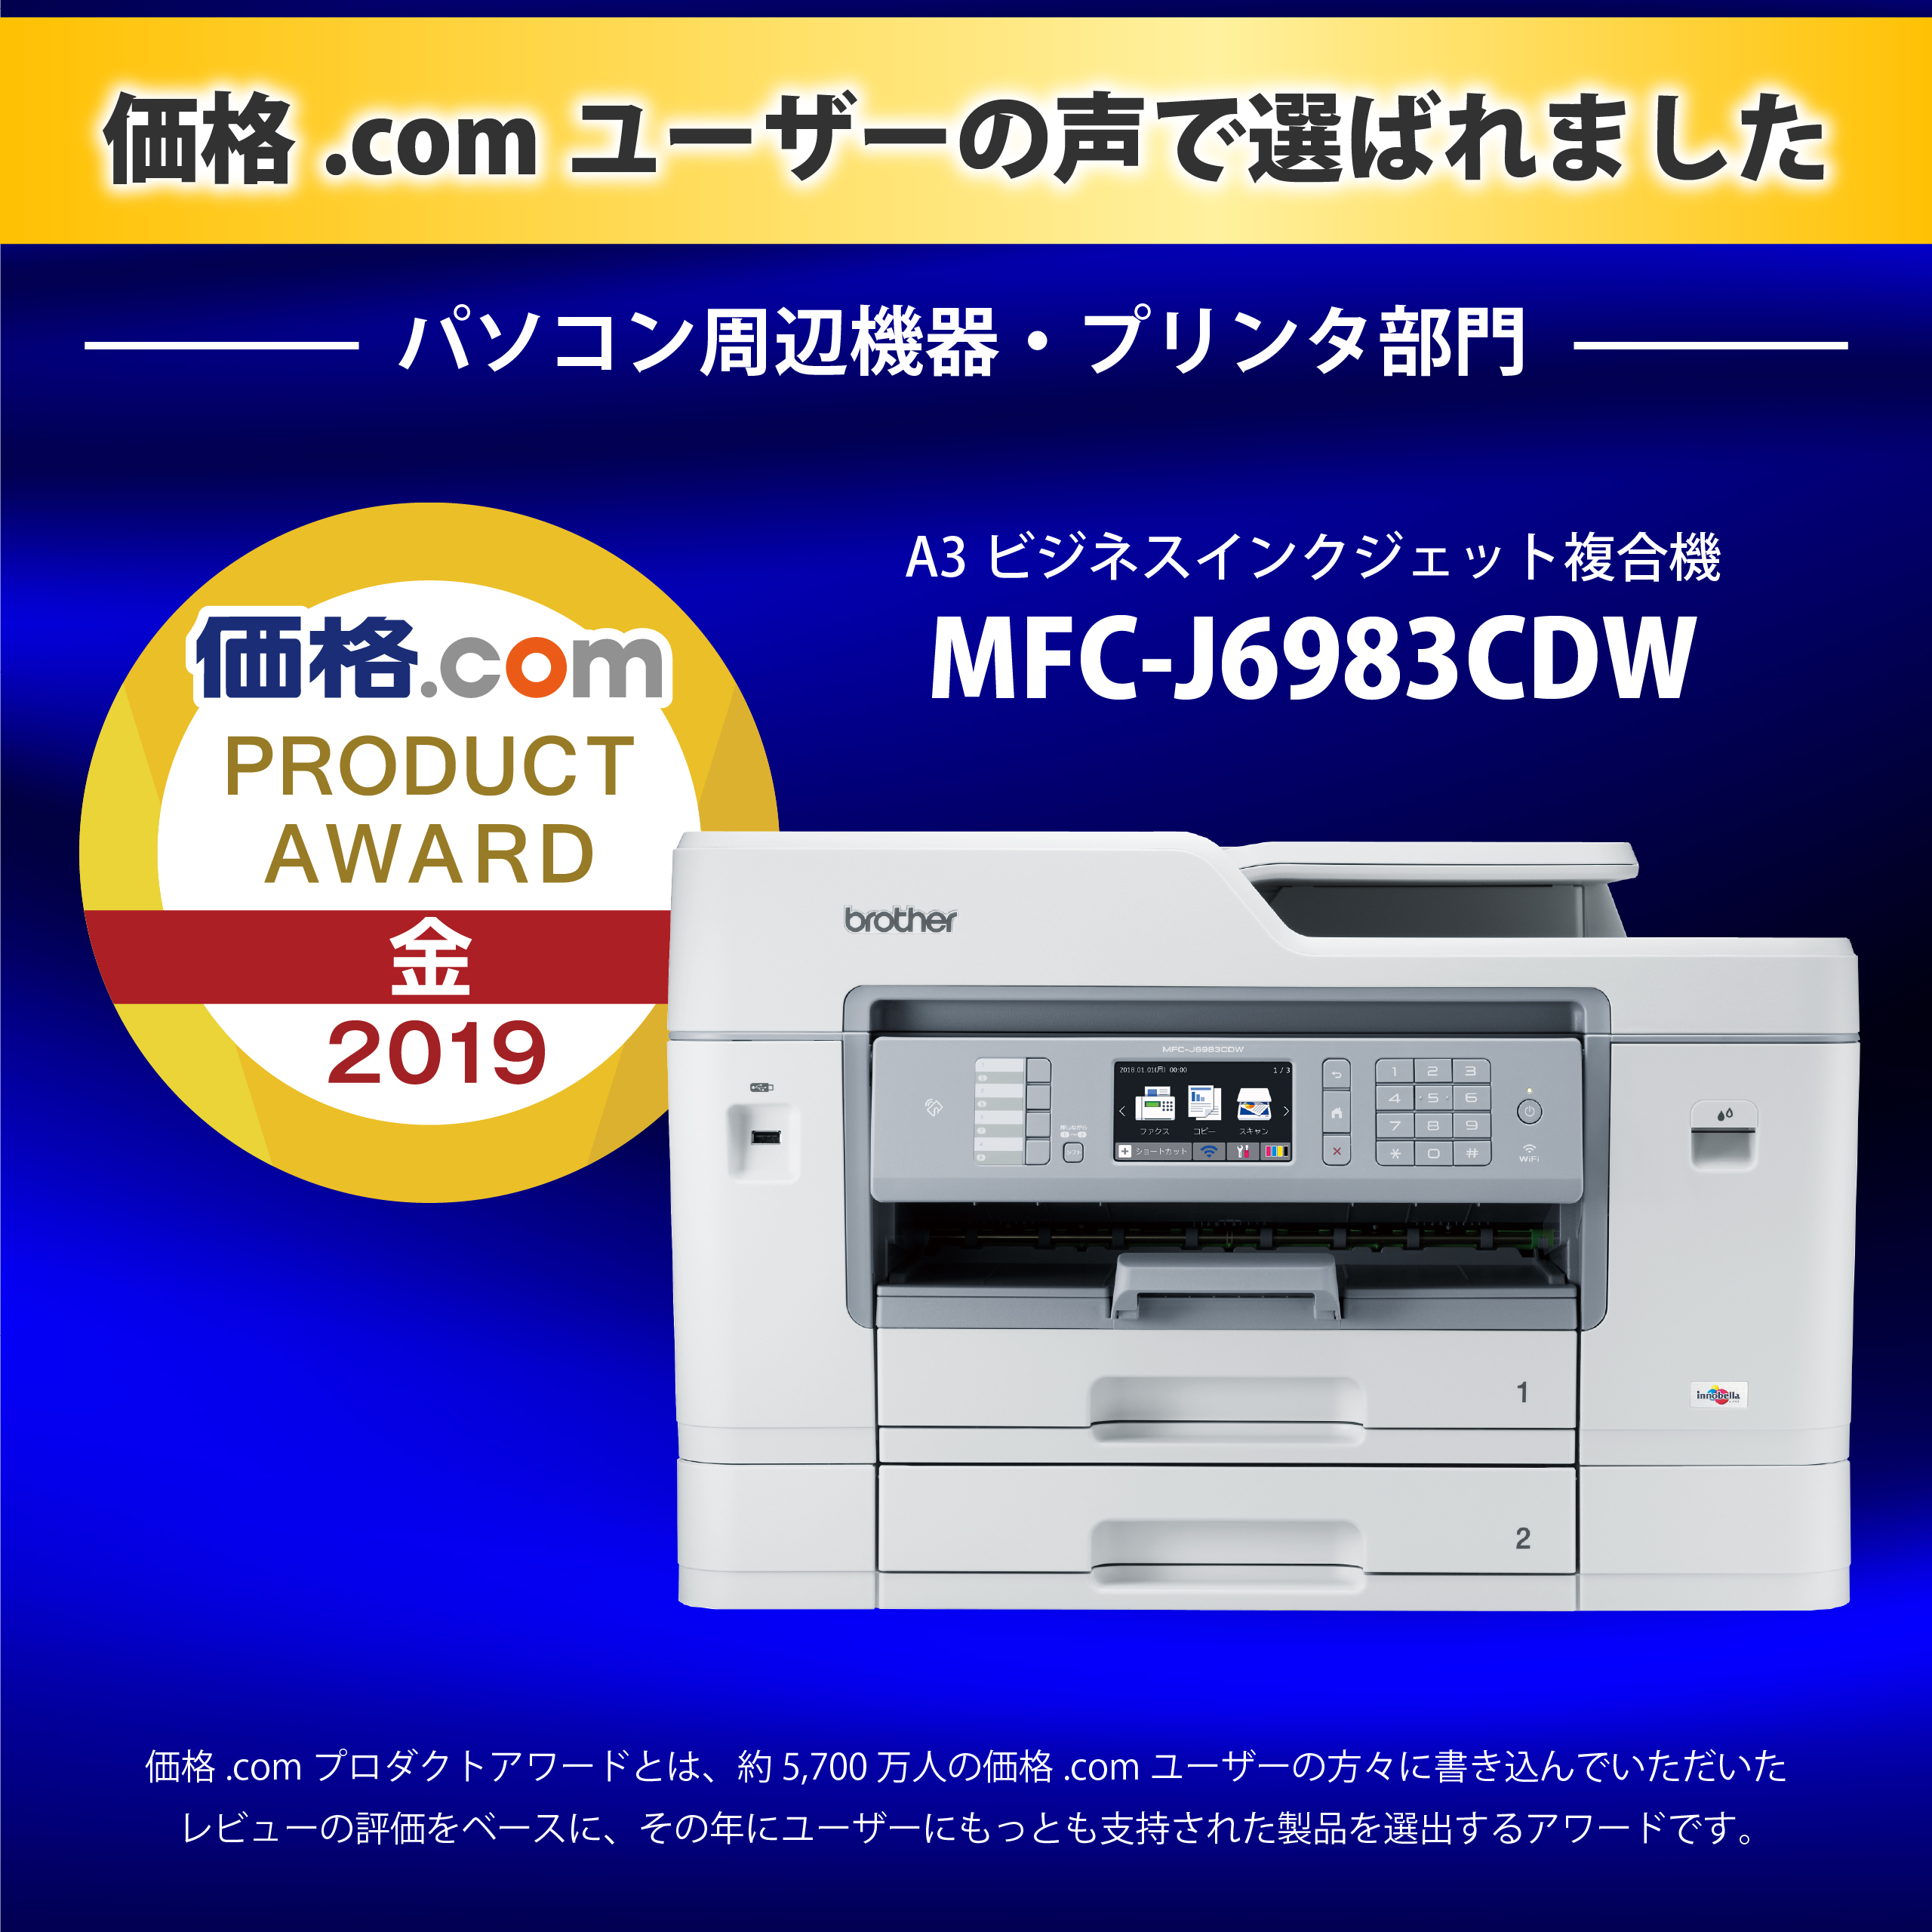 A3ビジネスインクジェットプリンター【MFC-J6983CDW】